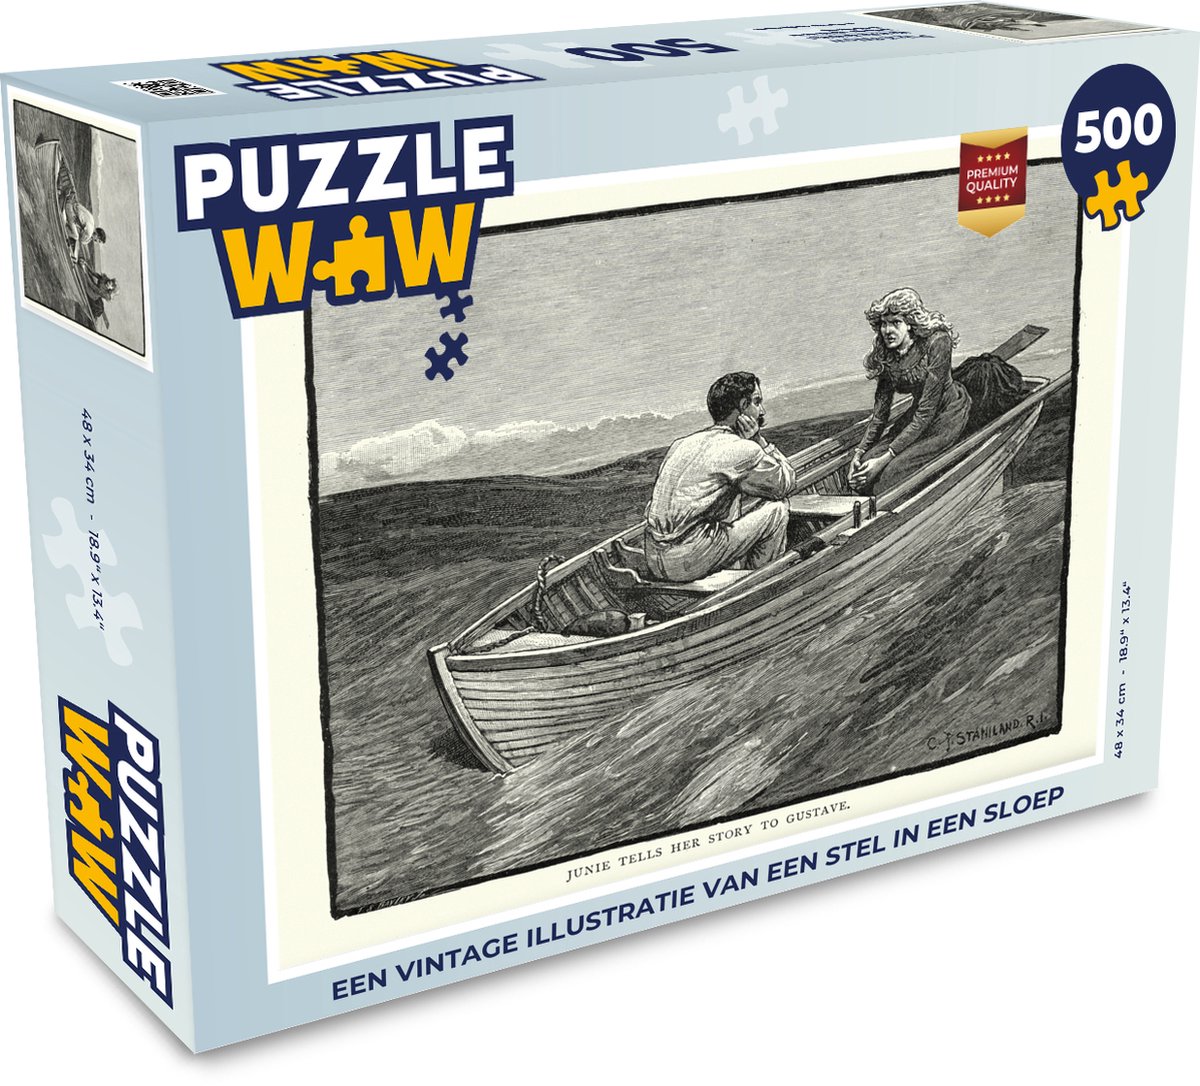 Afbeelding van product Puzzel 500 stukjes Sloep illustratie - Een vintage illustratie van een stel in een sloep - PuzzleWow heeft +100000 puzzels